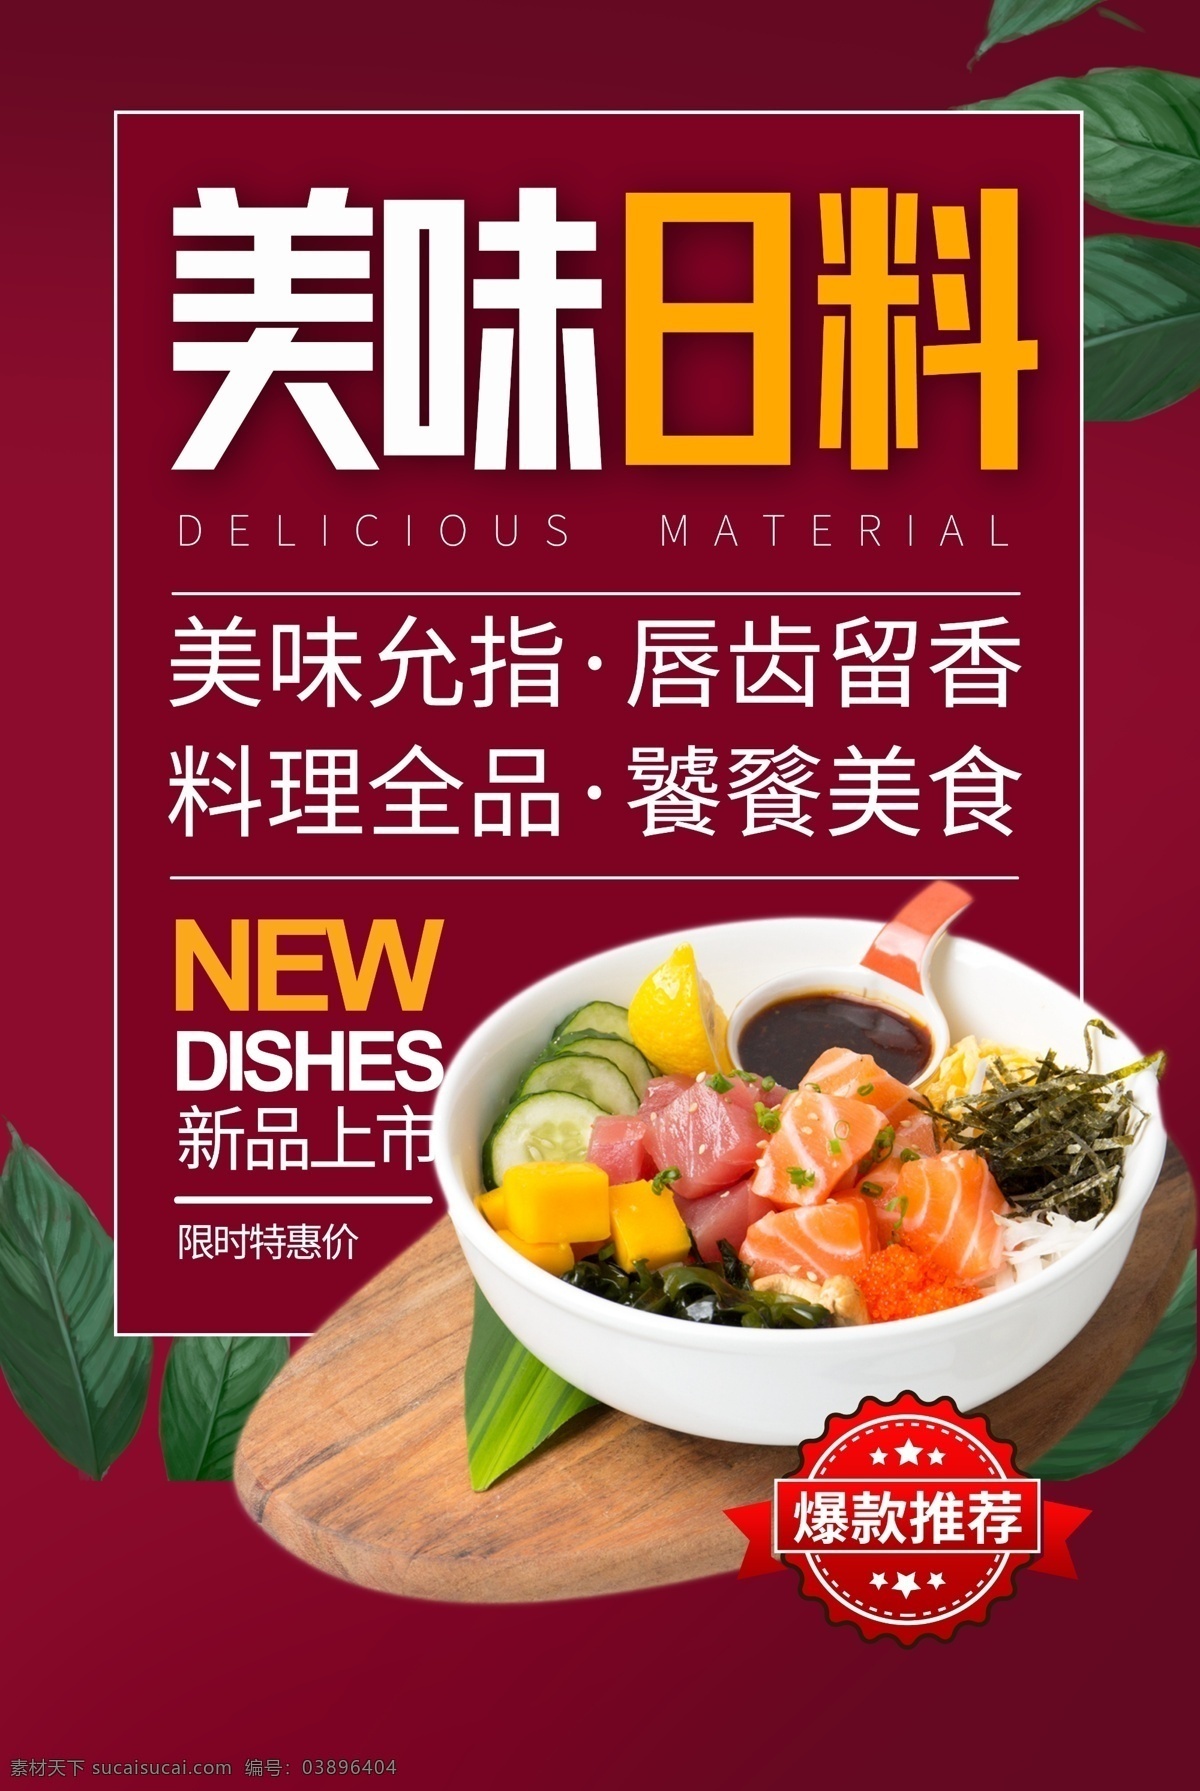 美味 日 料 寿司 活动 宣传海报 素材图片 日料 宣传 海报 餐饮美食 类